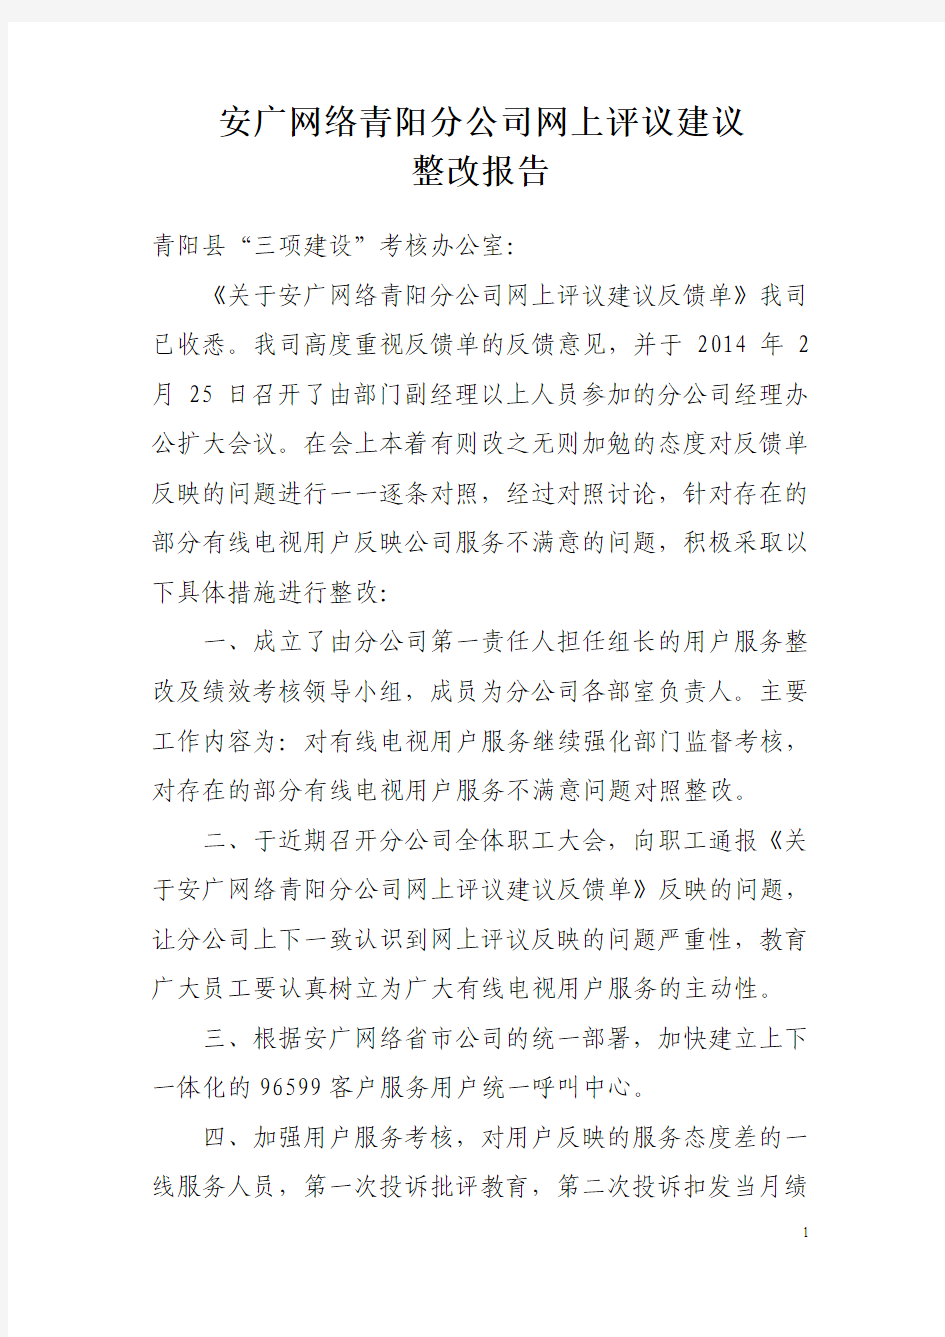 安广网络网上评议意见反馈整改